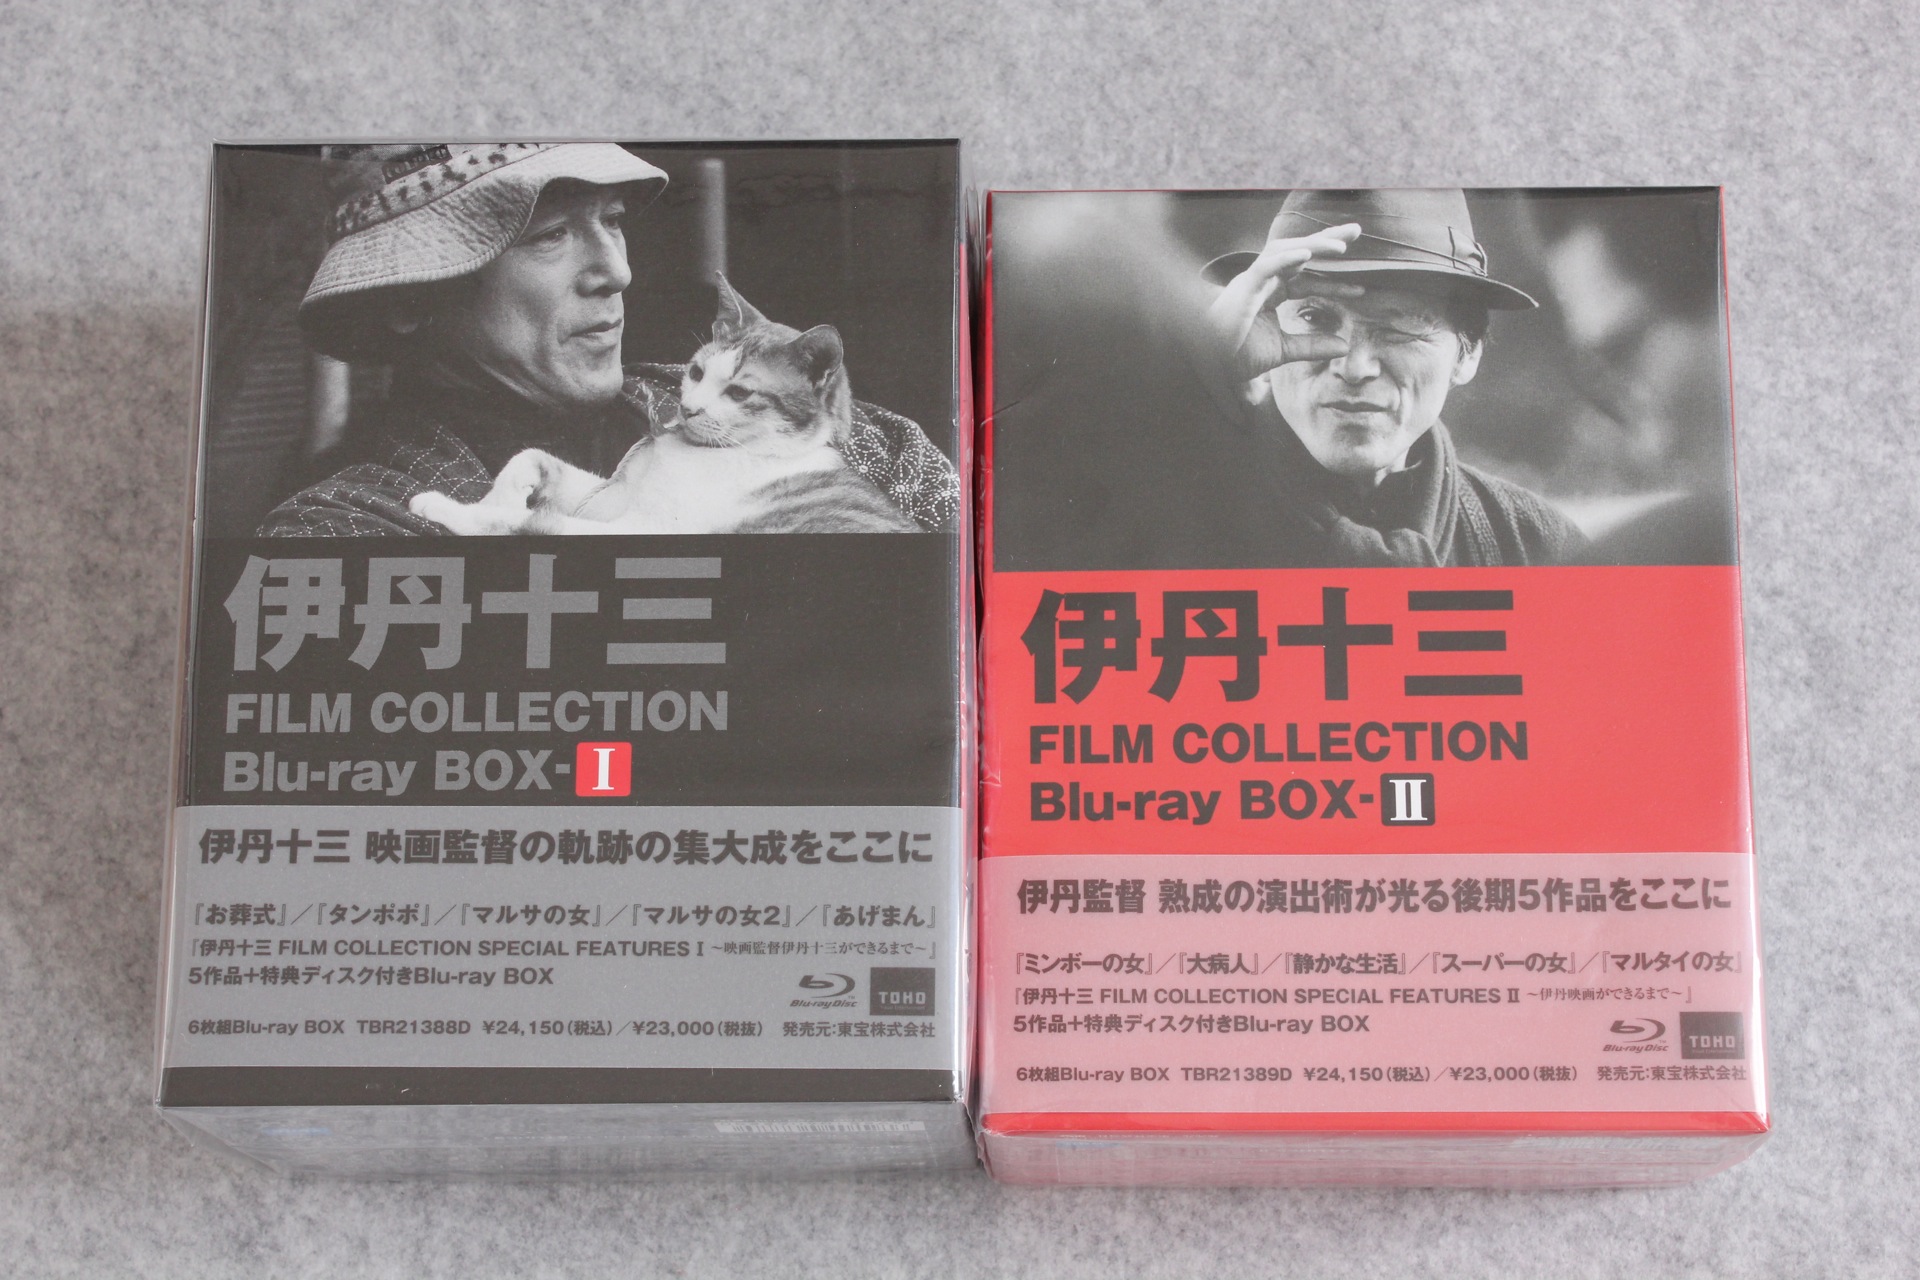 伊丹十三 Blu-ray BOX Ⅰ、BOXⅡ - ブルーレイ